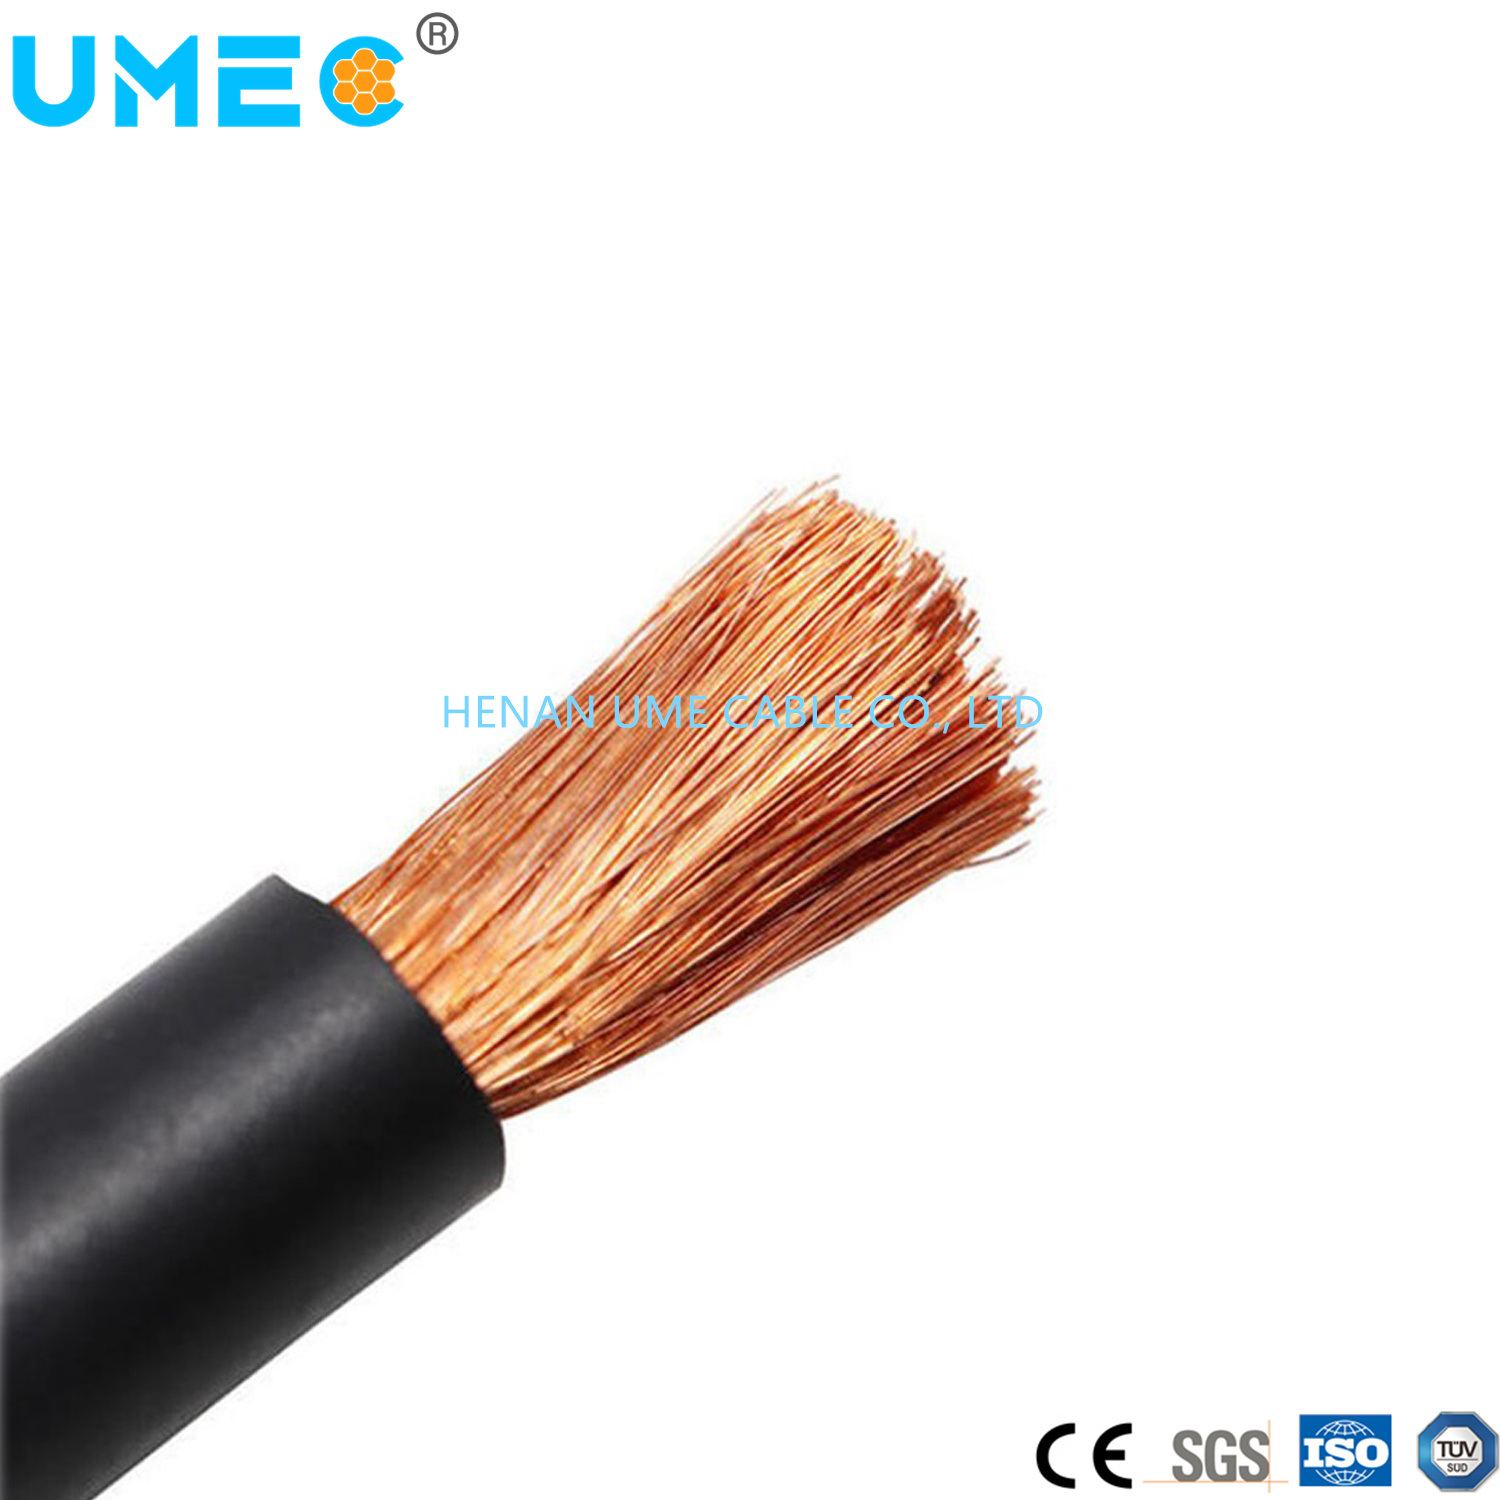 
                Оптовый дополнительный мягкий силиконовый кабель Черный оранжевый или Высокий прозрачный Кабель из силиконовой резины с медным проводником 16 мм2
            